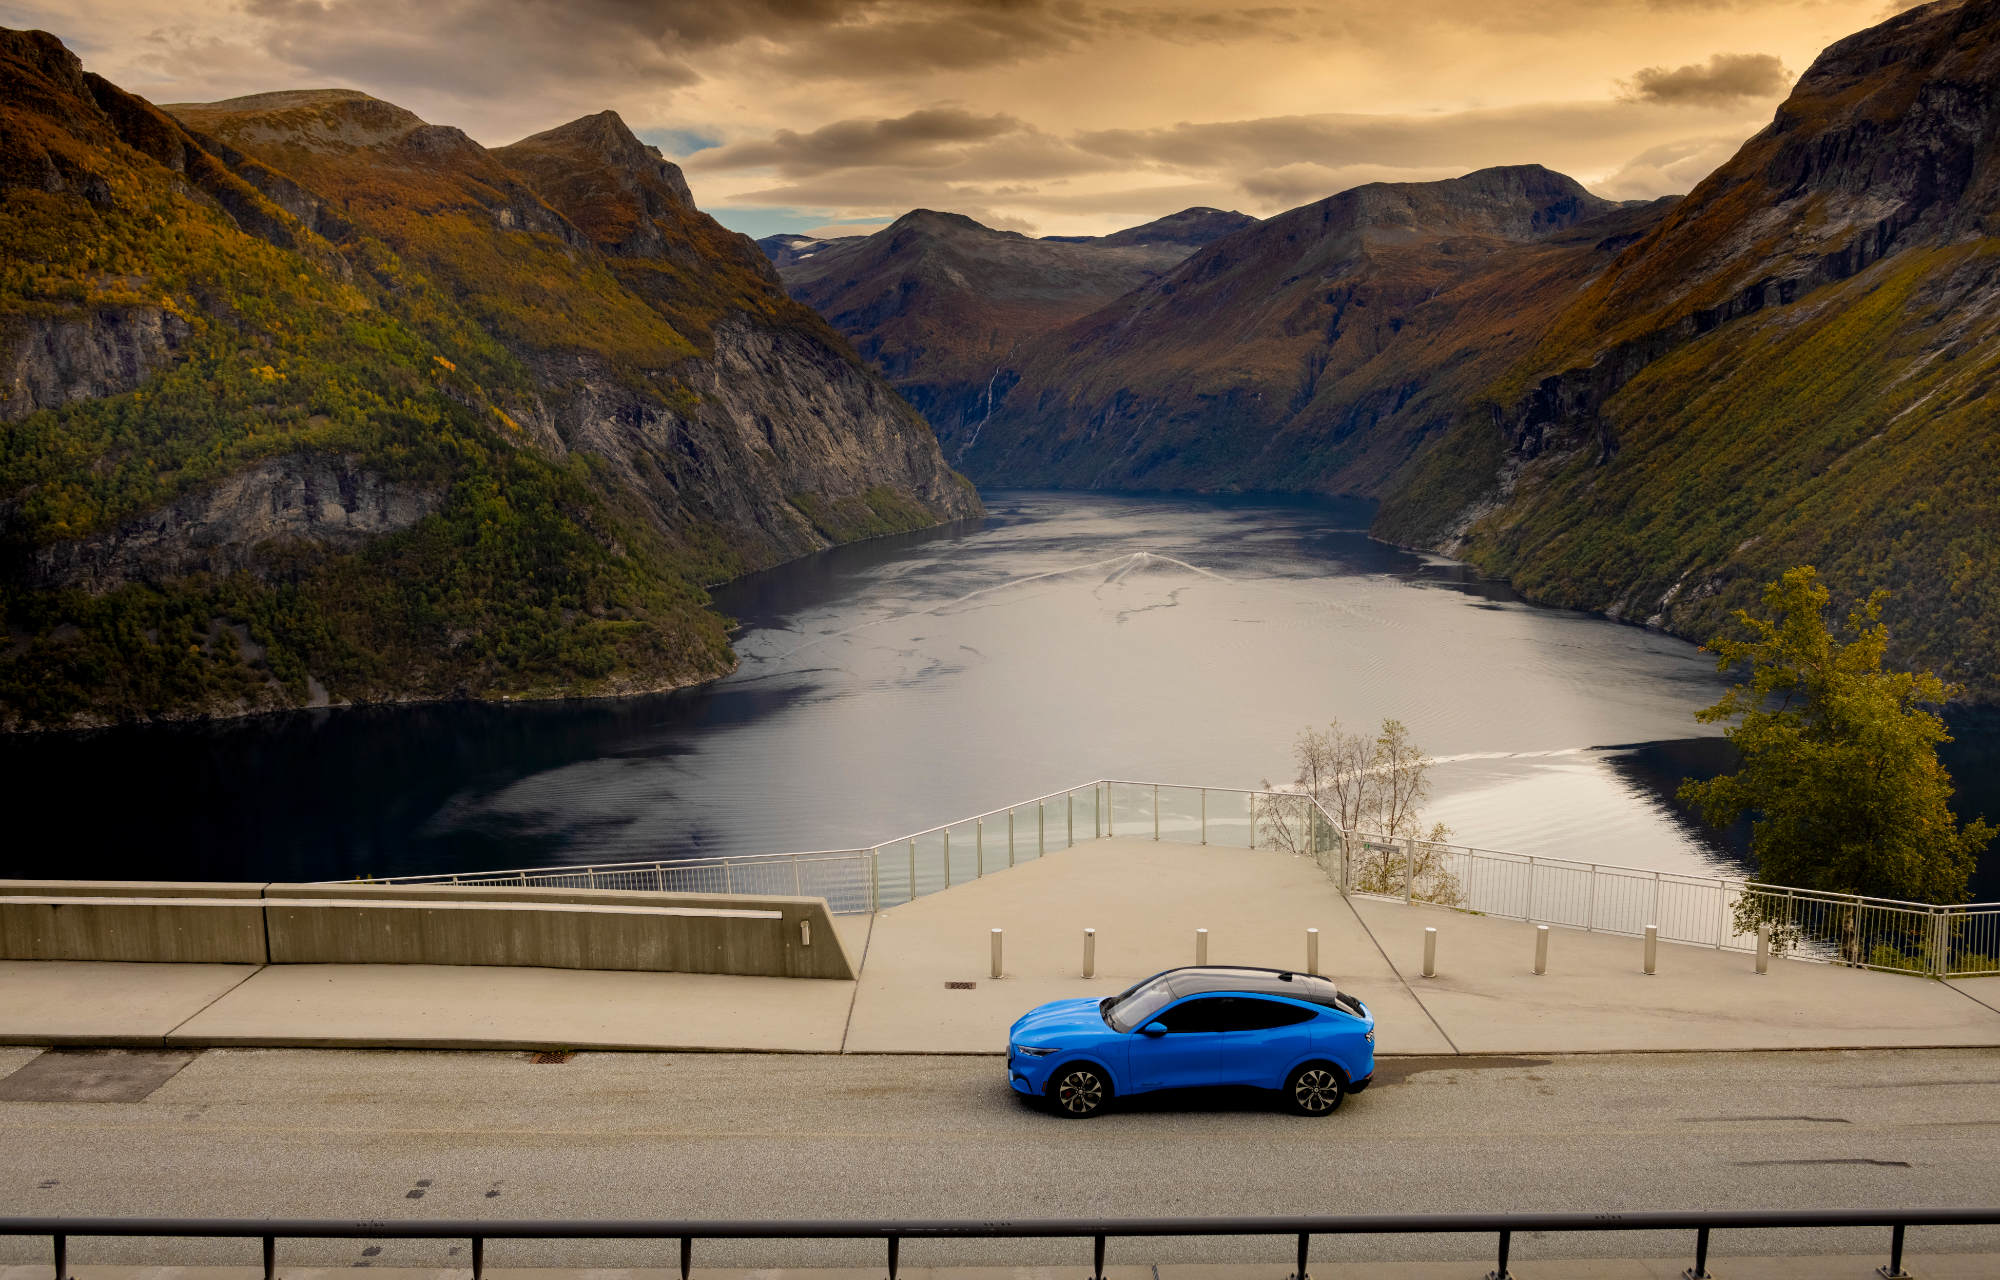 Mach-E i Norge med bjerg og sø